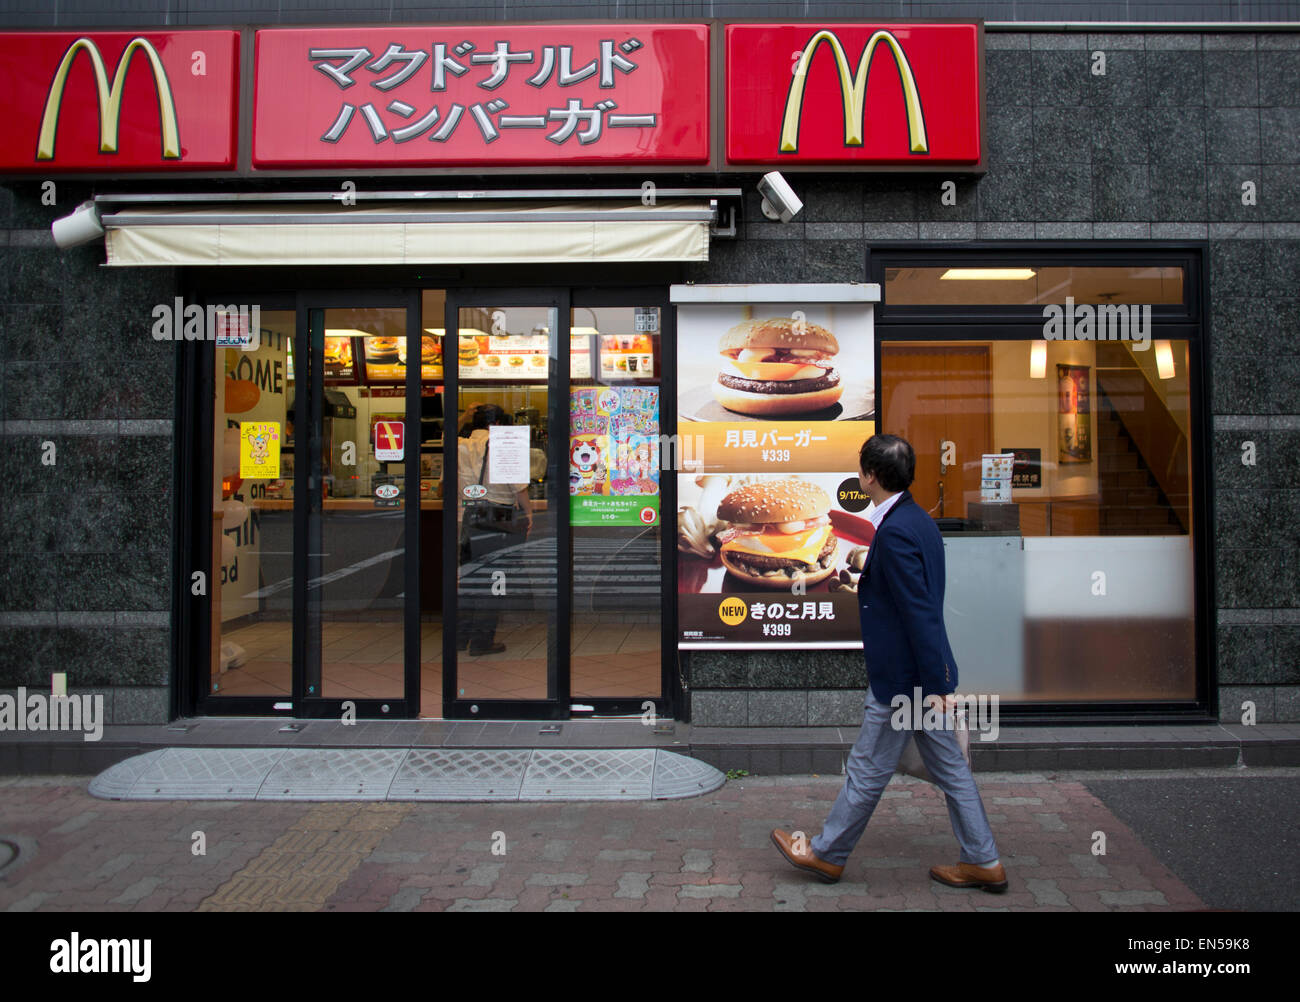 McDonald's restaurant in Tokyo Stock Photo